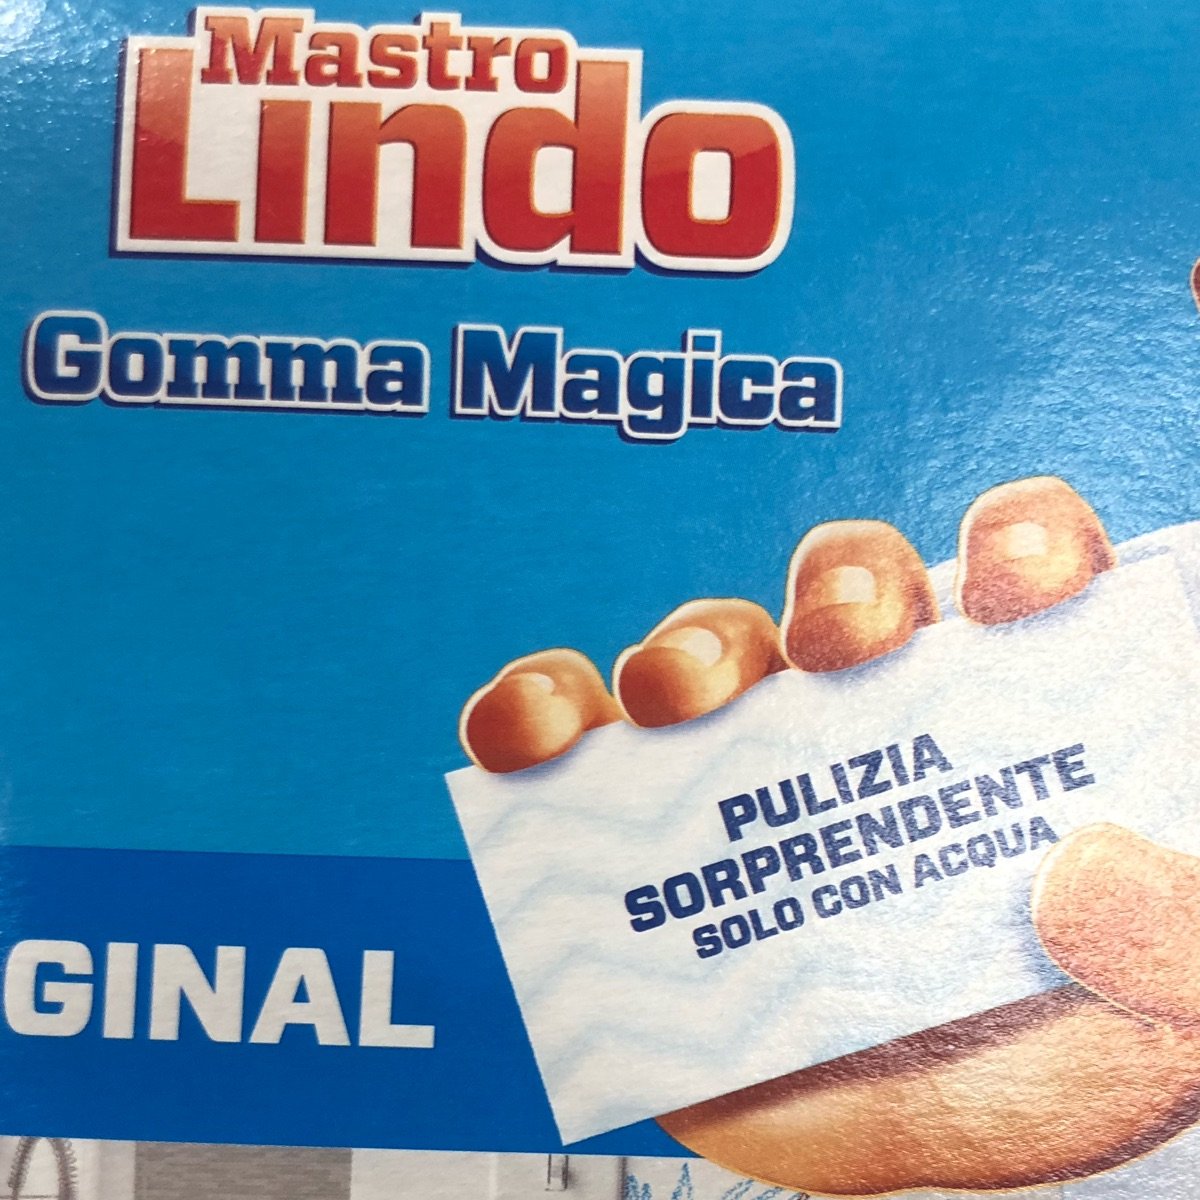 Mastro Lindo Spugna bianca Review